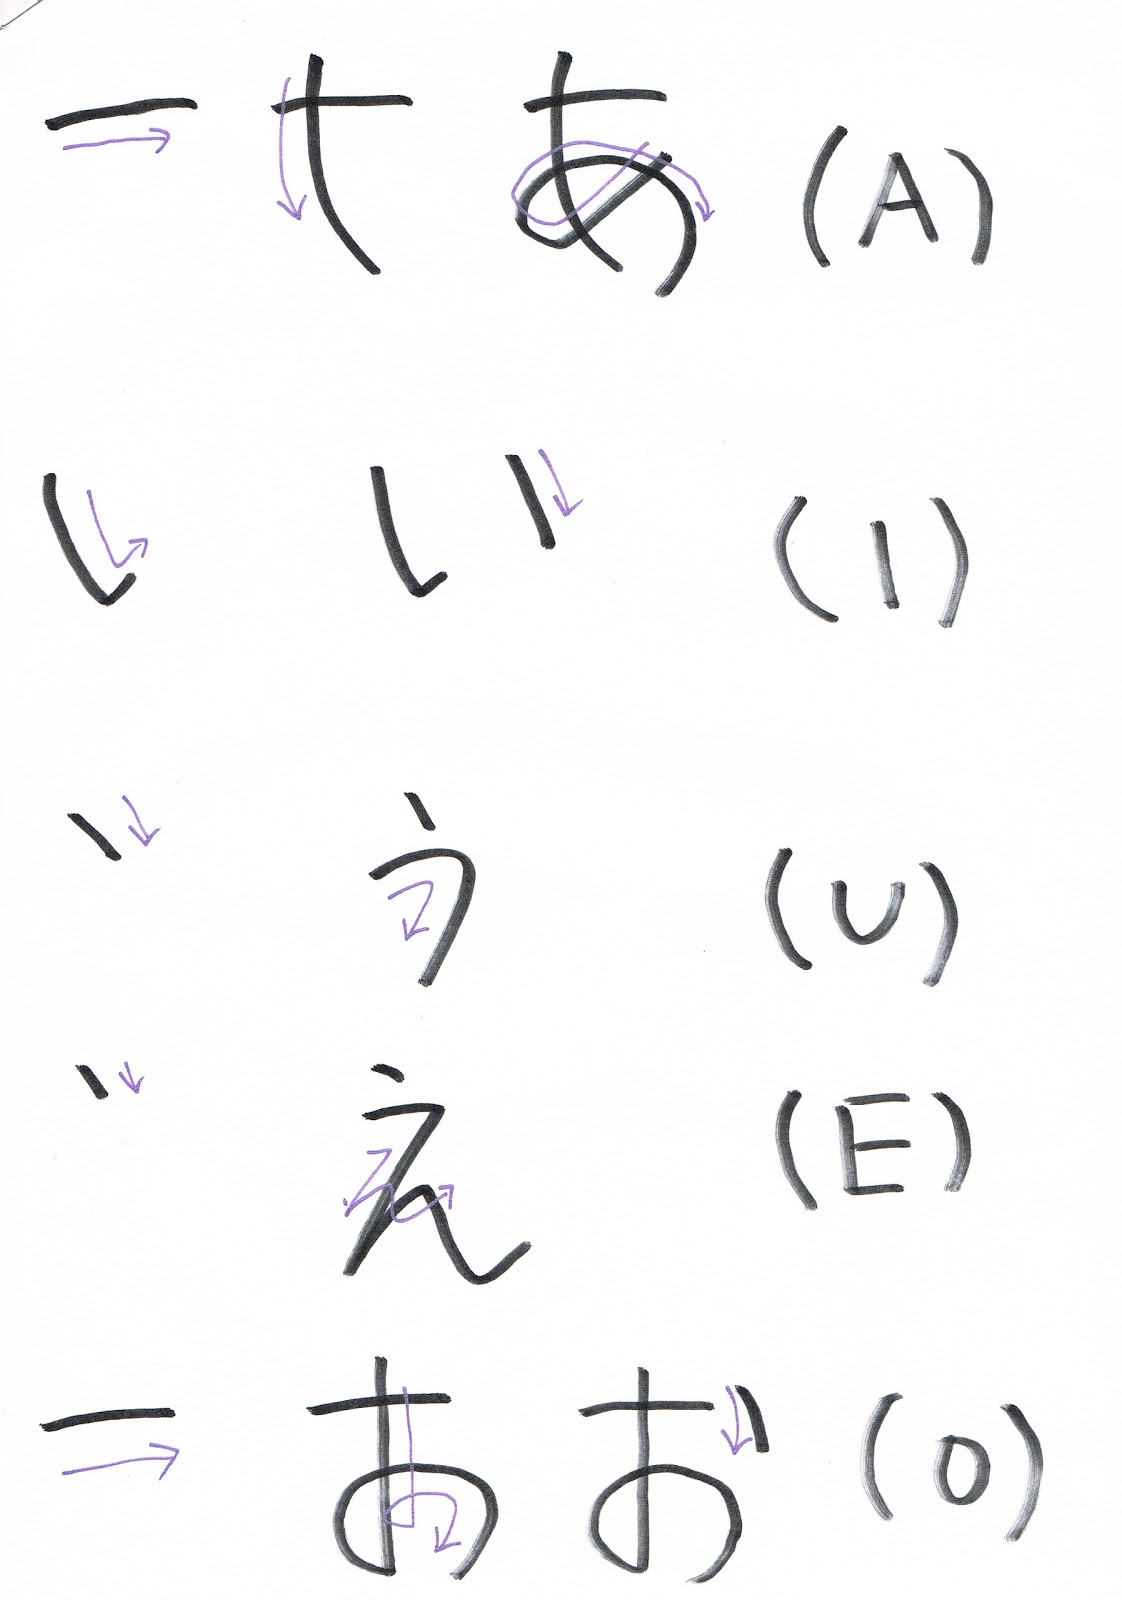 Aprendendo japones ~ A+hiragana+